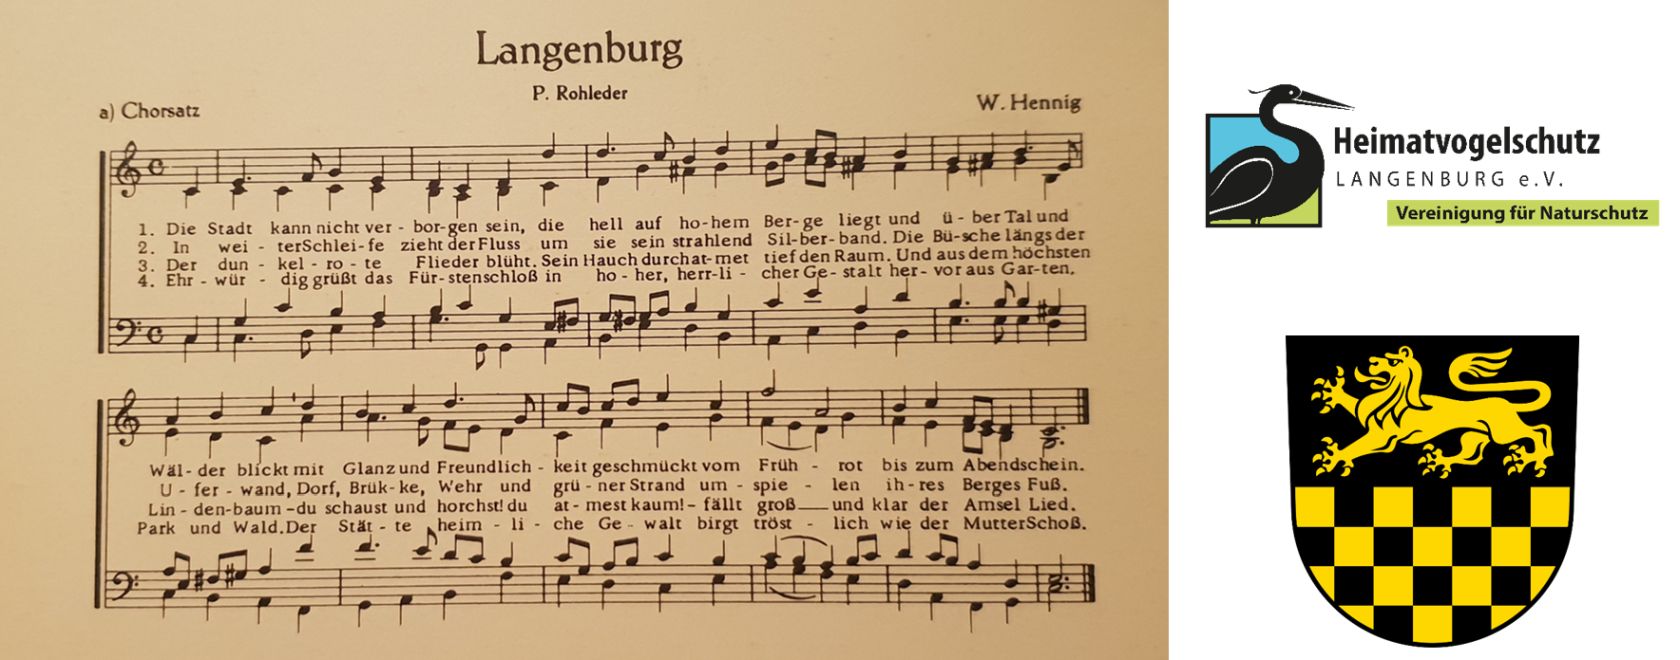 Das Langenburg Lied, welches feierlich der Stadt Langenburg übergeben wurde